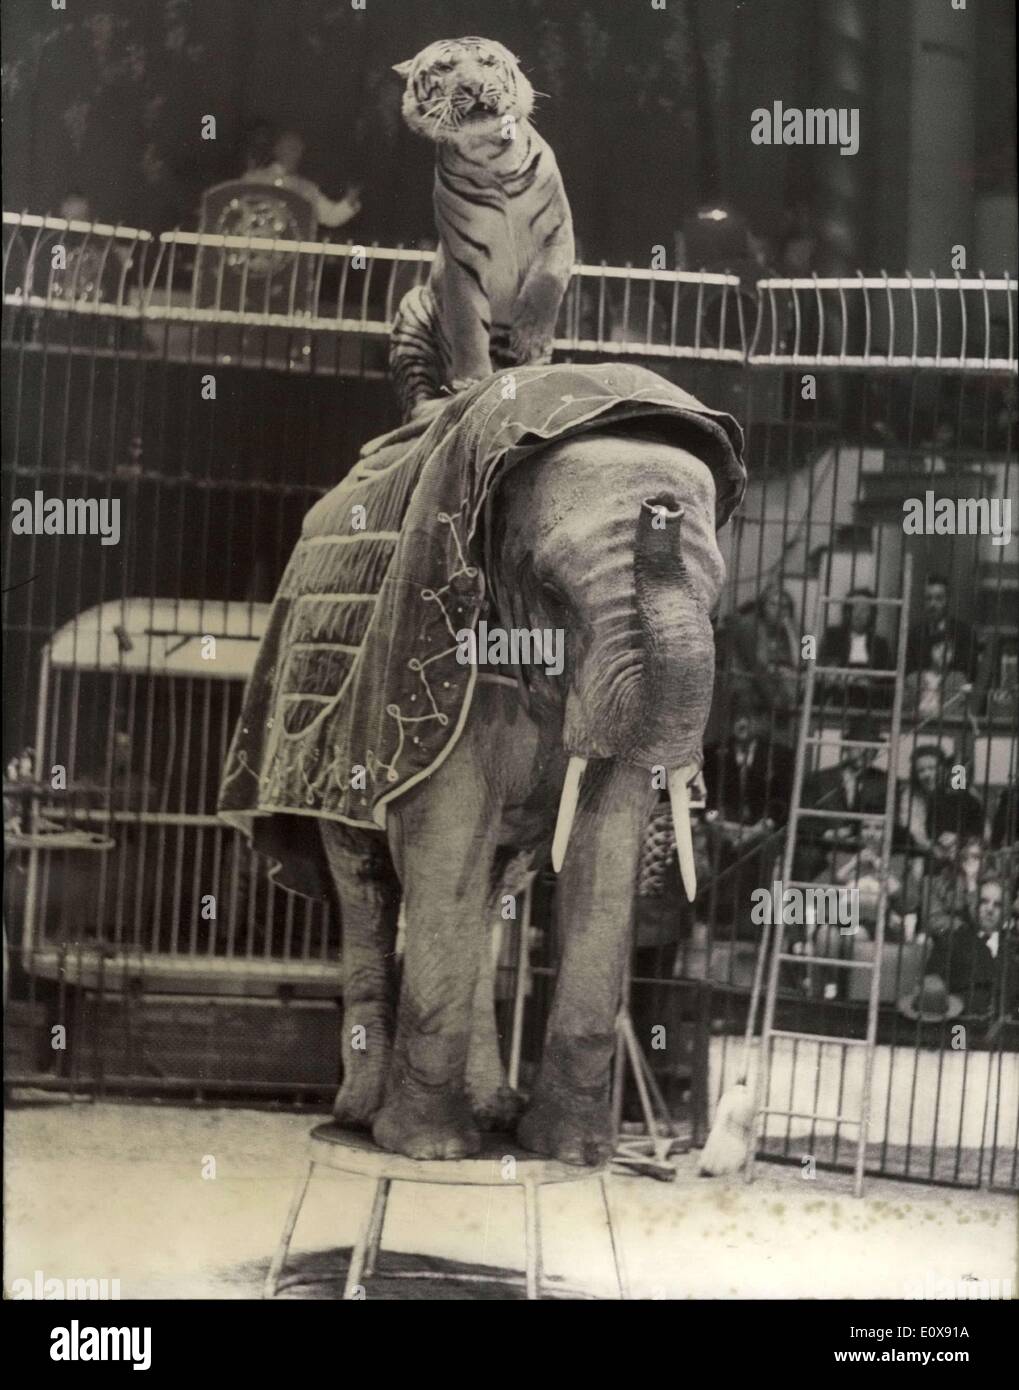 12 novembre 1965 - Tiger horse rider attraction n°1 : Le tigre est l'attraction de la loi no 1 de l'hiver de Paris circus prépare maintenant son programme de Noël moi. Le tigre équitation un éléphant, l'attraction n°1 du cirque d'hiver de Paris. Banque D'Images